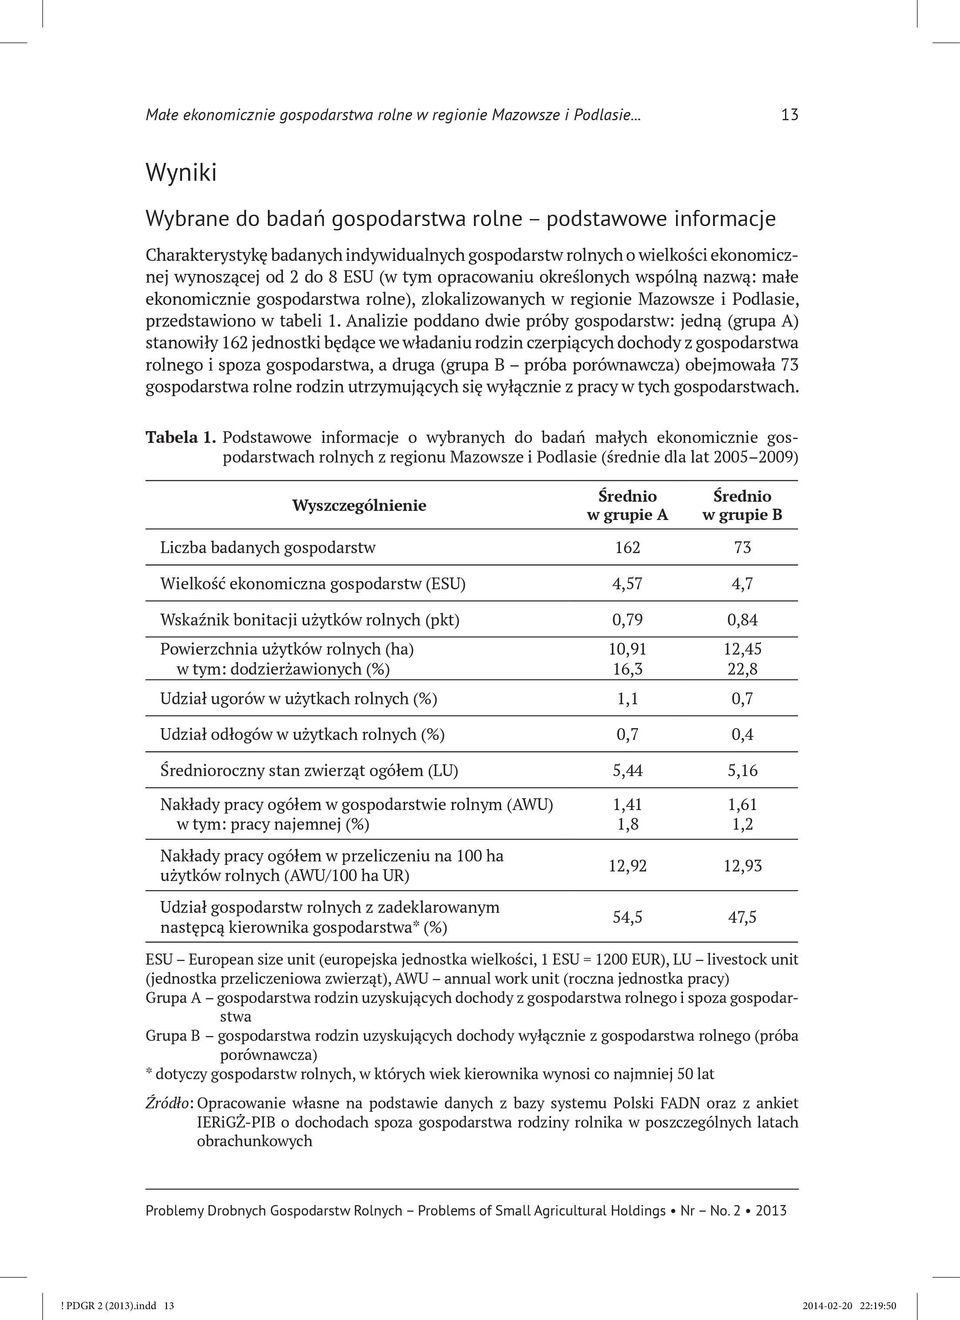 określonych wspólną nazwą: małe ekonomicznie gospodarstwa rolne), zlokalizowanych w regionie Mazowsze i Podlasie, przedstawiono w tabeli 1.